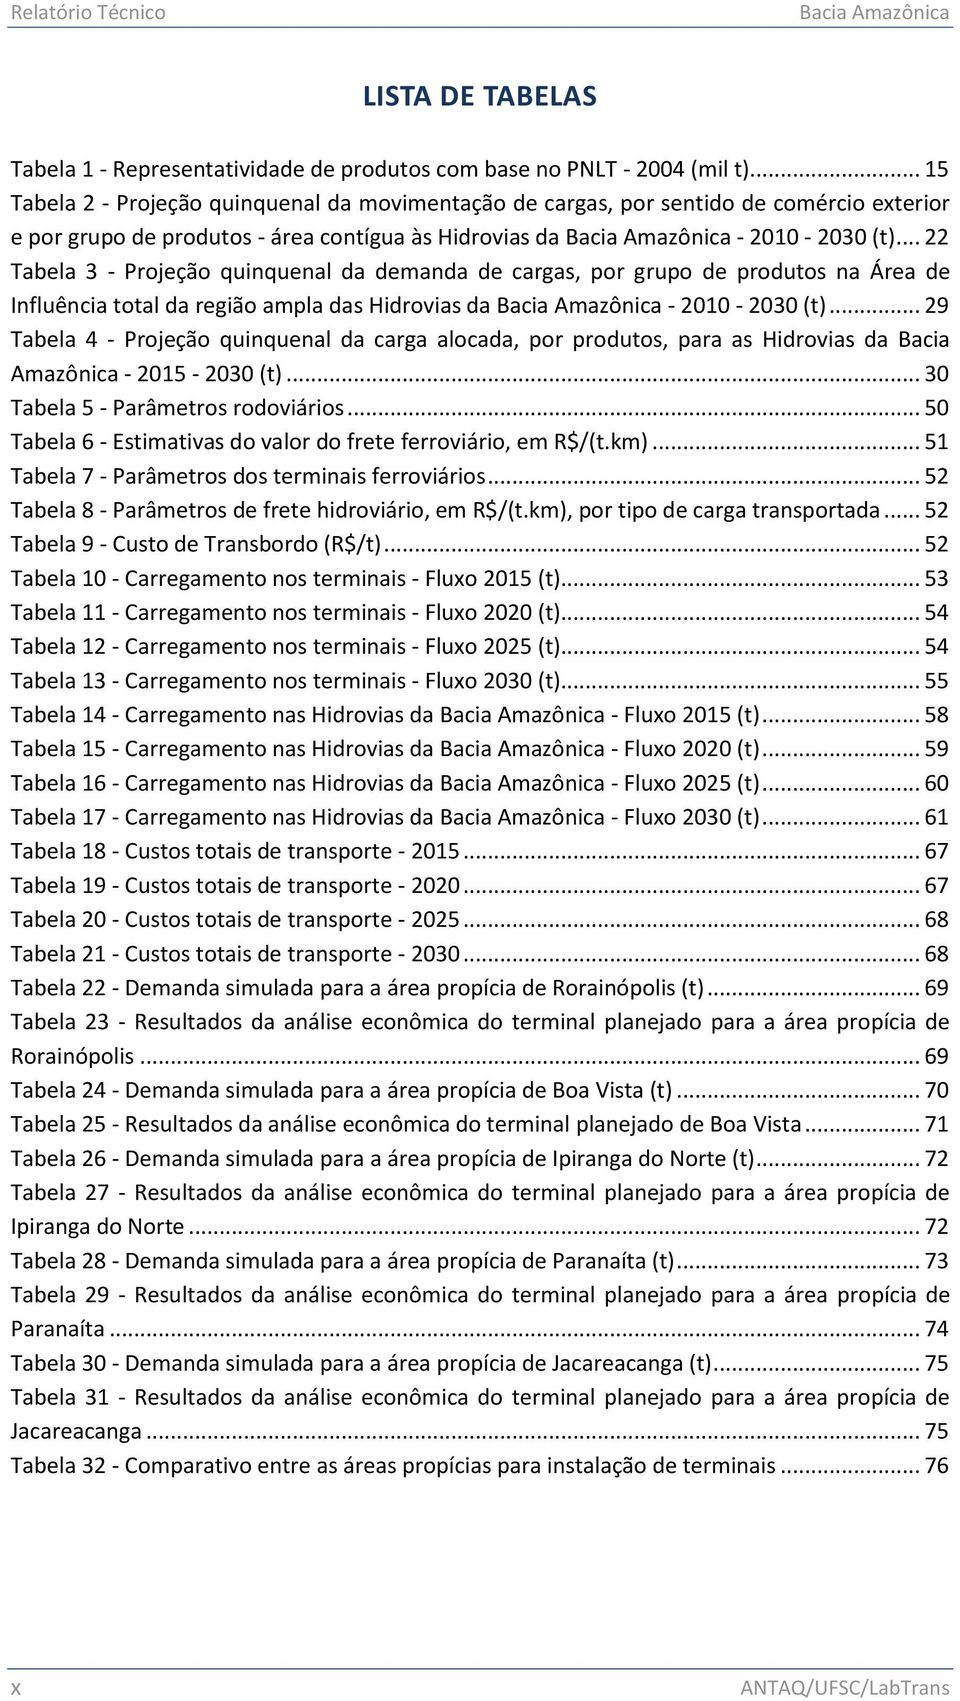 .. 22 Tabela 3 - Projeção quinquenal da demanda de cargas, por grupo de produtos na Área de Influência total da região ampla das Hidrovias da Bacia Amazônica - 2010-2030 (t).